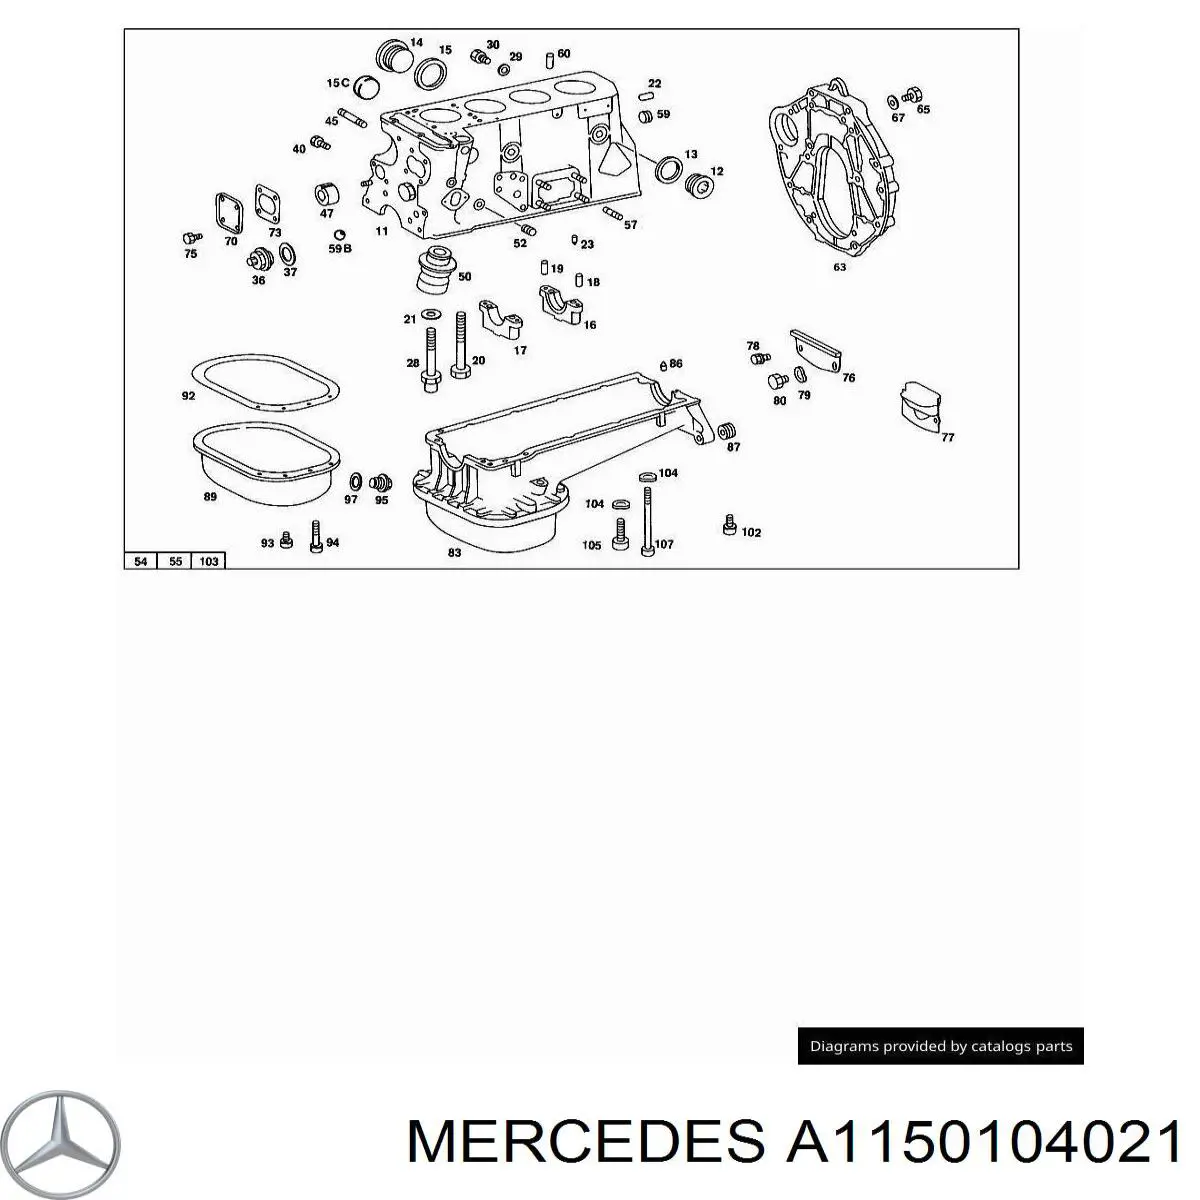 A1150104021 Mercedes комплект прокладок двигателя верхний